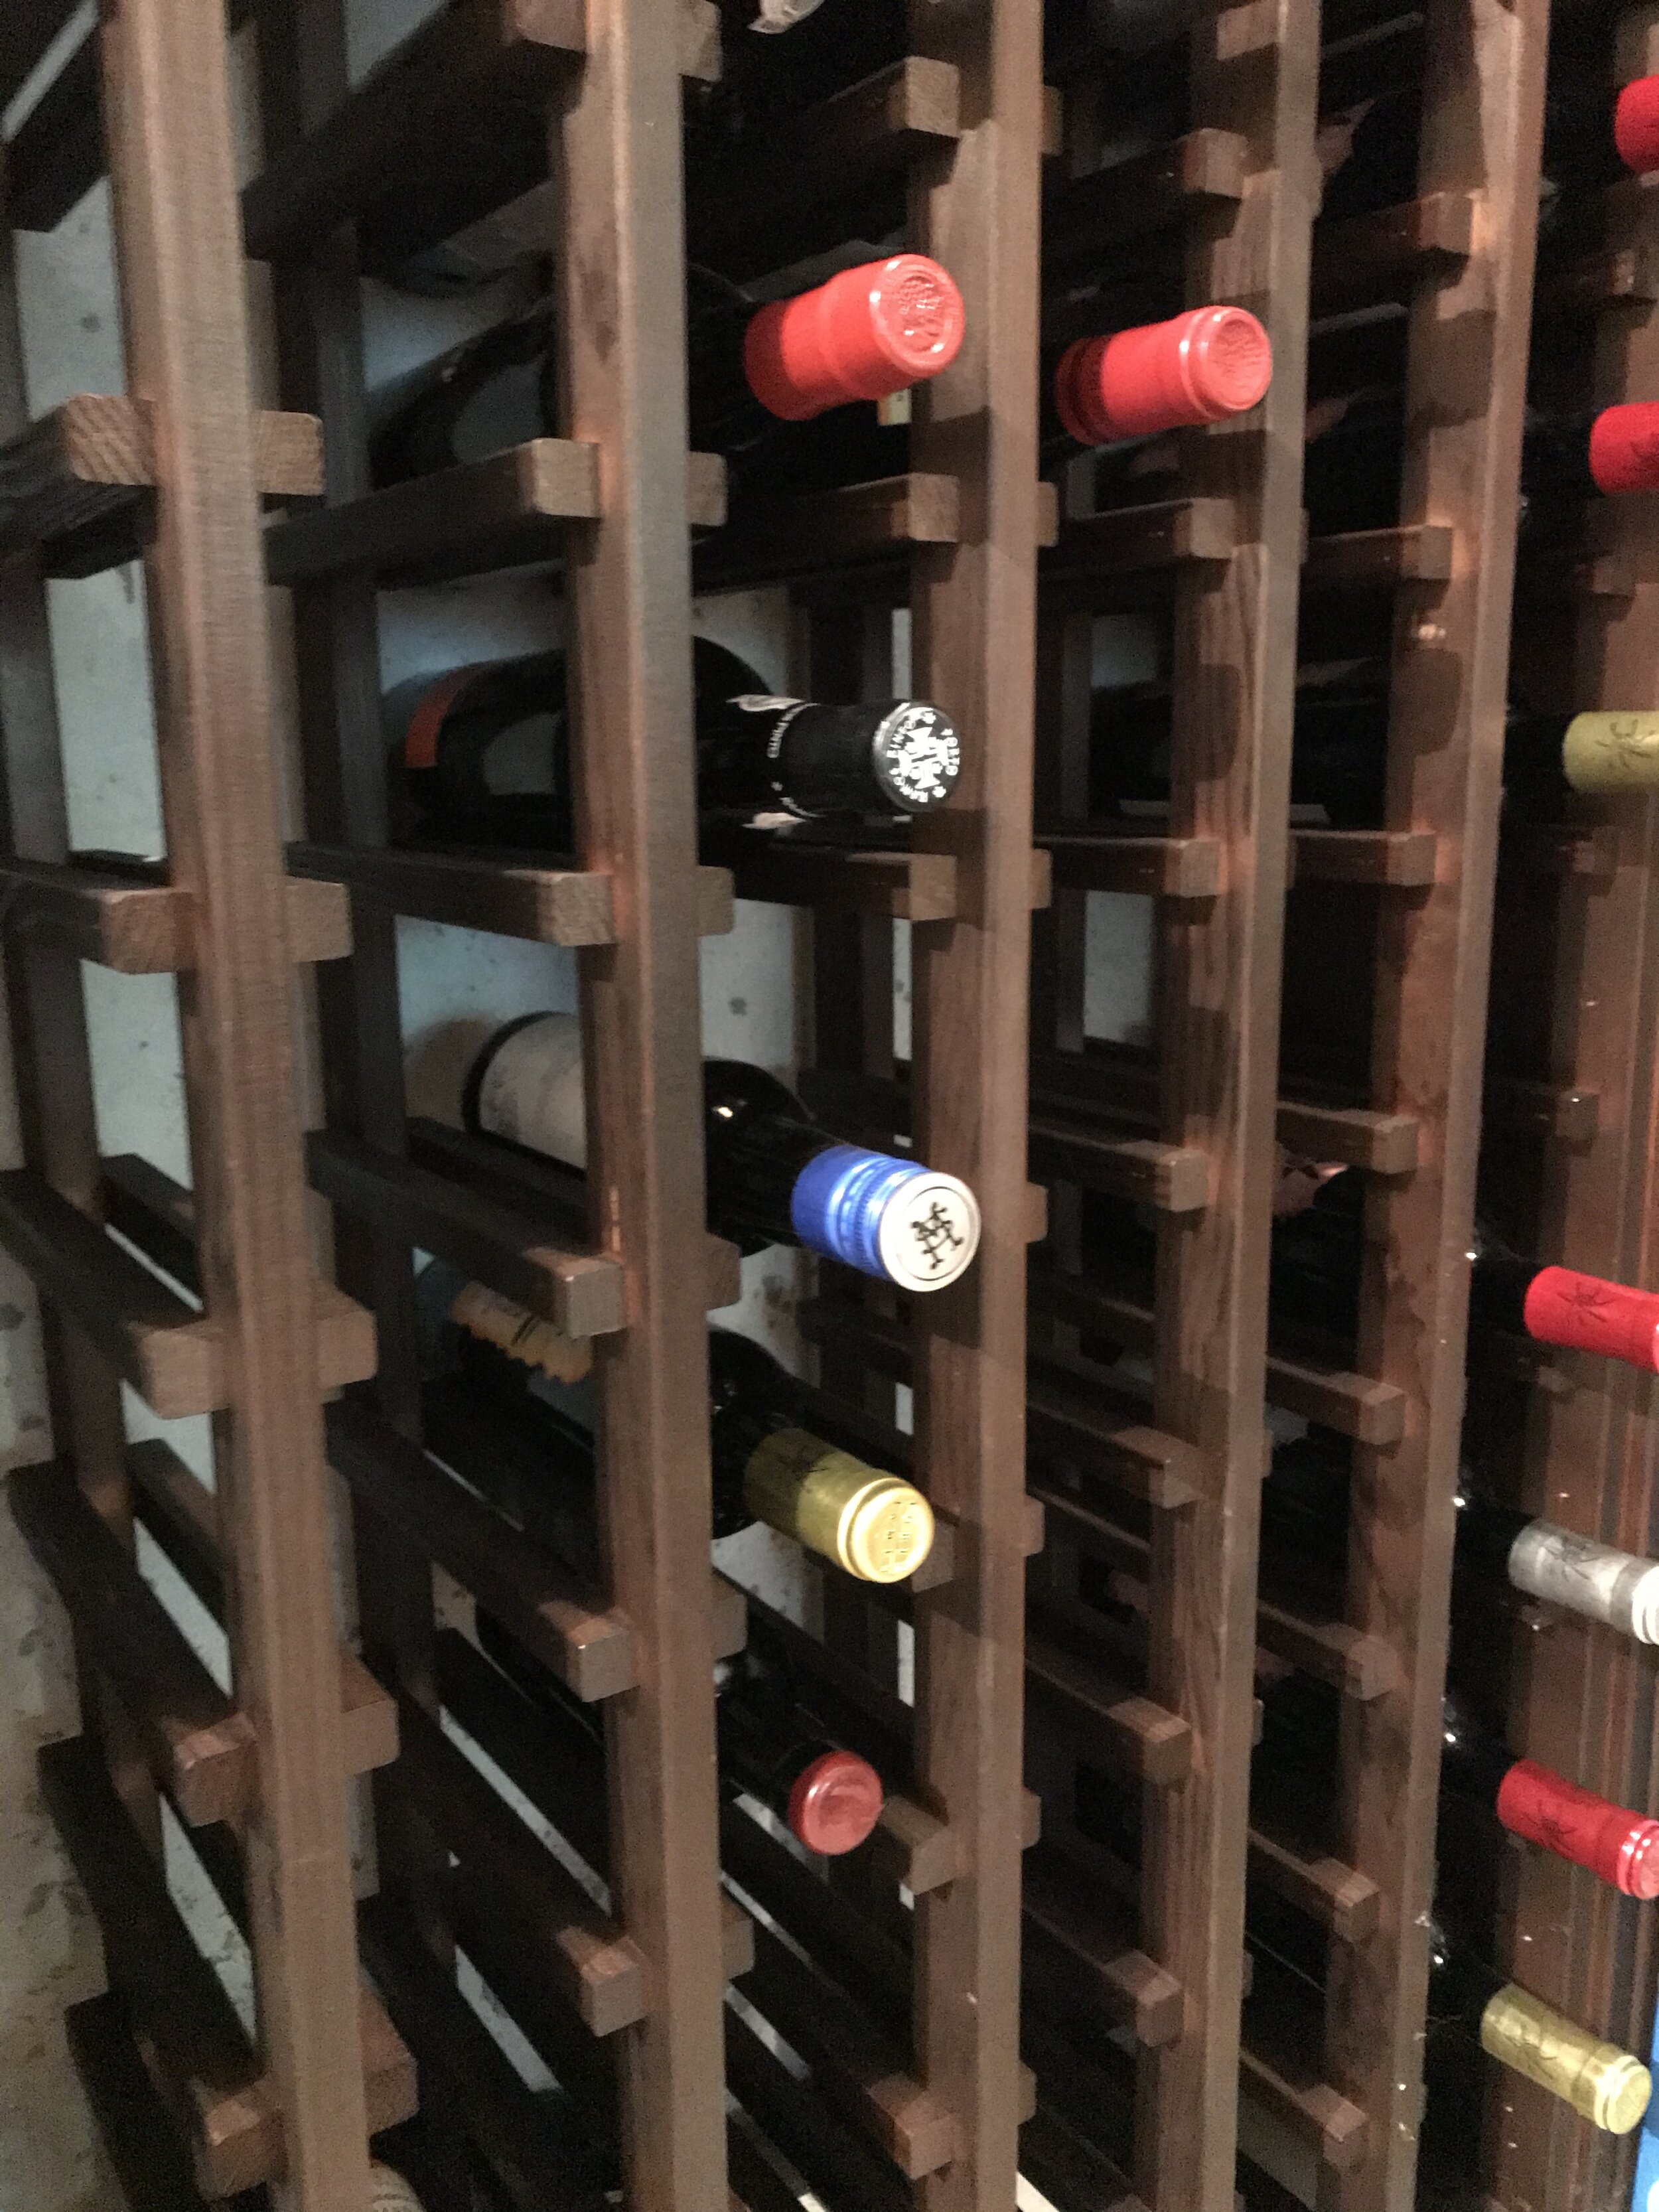 Best Hygrometers for Wine Cellars — KnowWines